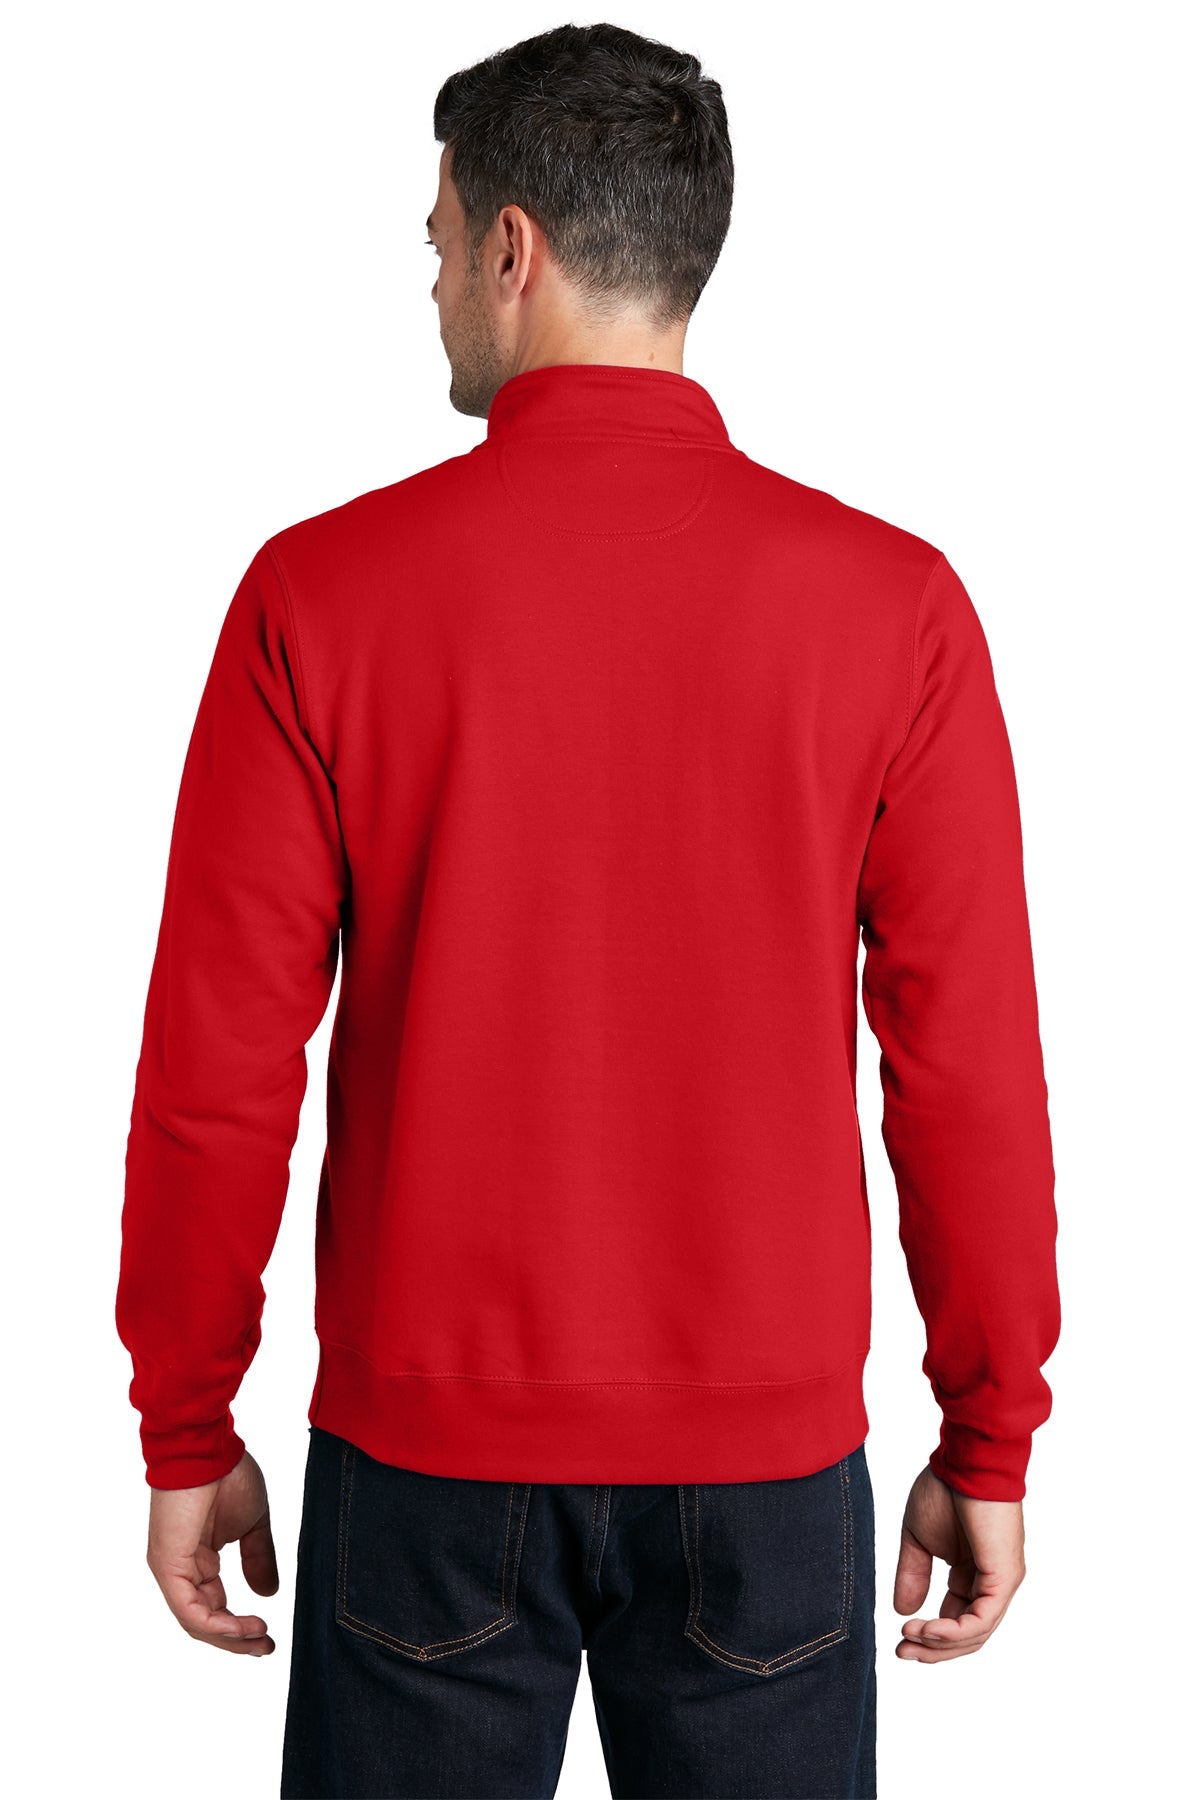 Port & Company Fan Favorite Fleece Branded Quarter Zips, Bright Red